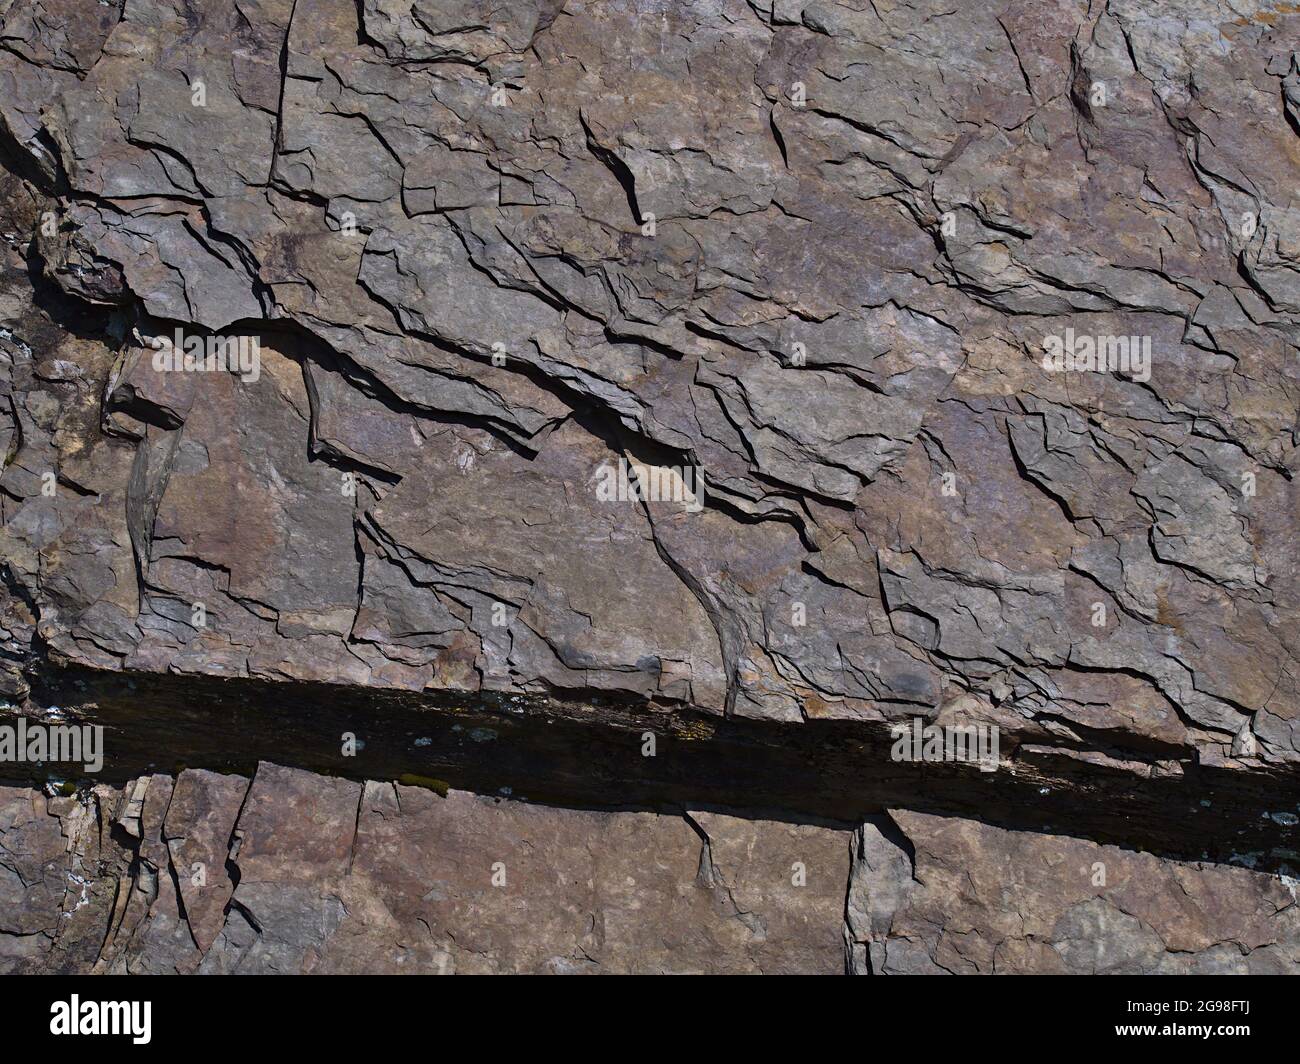 Nahaufnahme von Schiefer (auch Schiefer, Schiefer, ein metamorphes Gestein) mit sichtbaren rissigen Schichten und farbiger Oberfläche an sonnigen Tagen mit Schattenmuster. Stockfoto